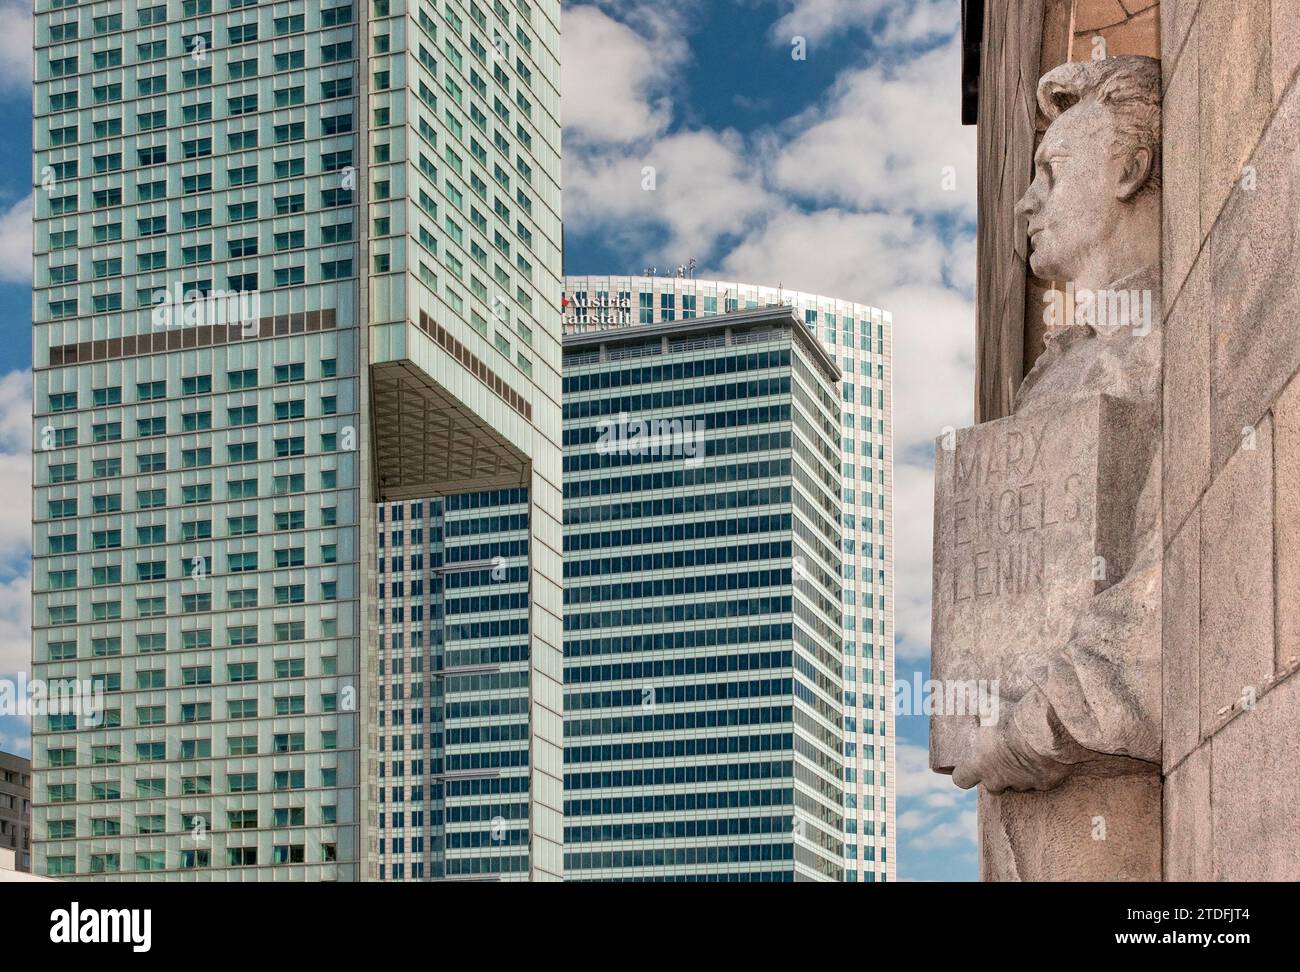 Ironischer Blick auf kommunistische Vergangenheit und kapitalistische Gegenwart: Statue des heldenhaften Arbeiters im Kulturpalast und in modernen Wolkenkratzern in Warschau, Polen Stockfoto